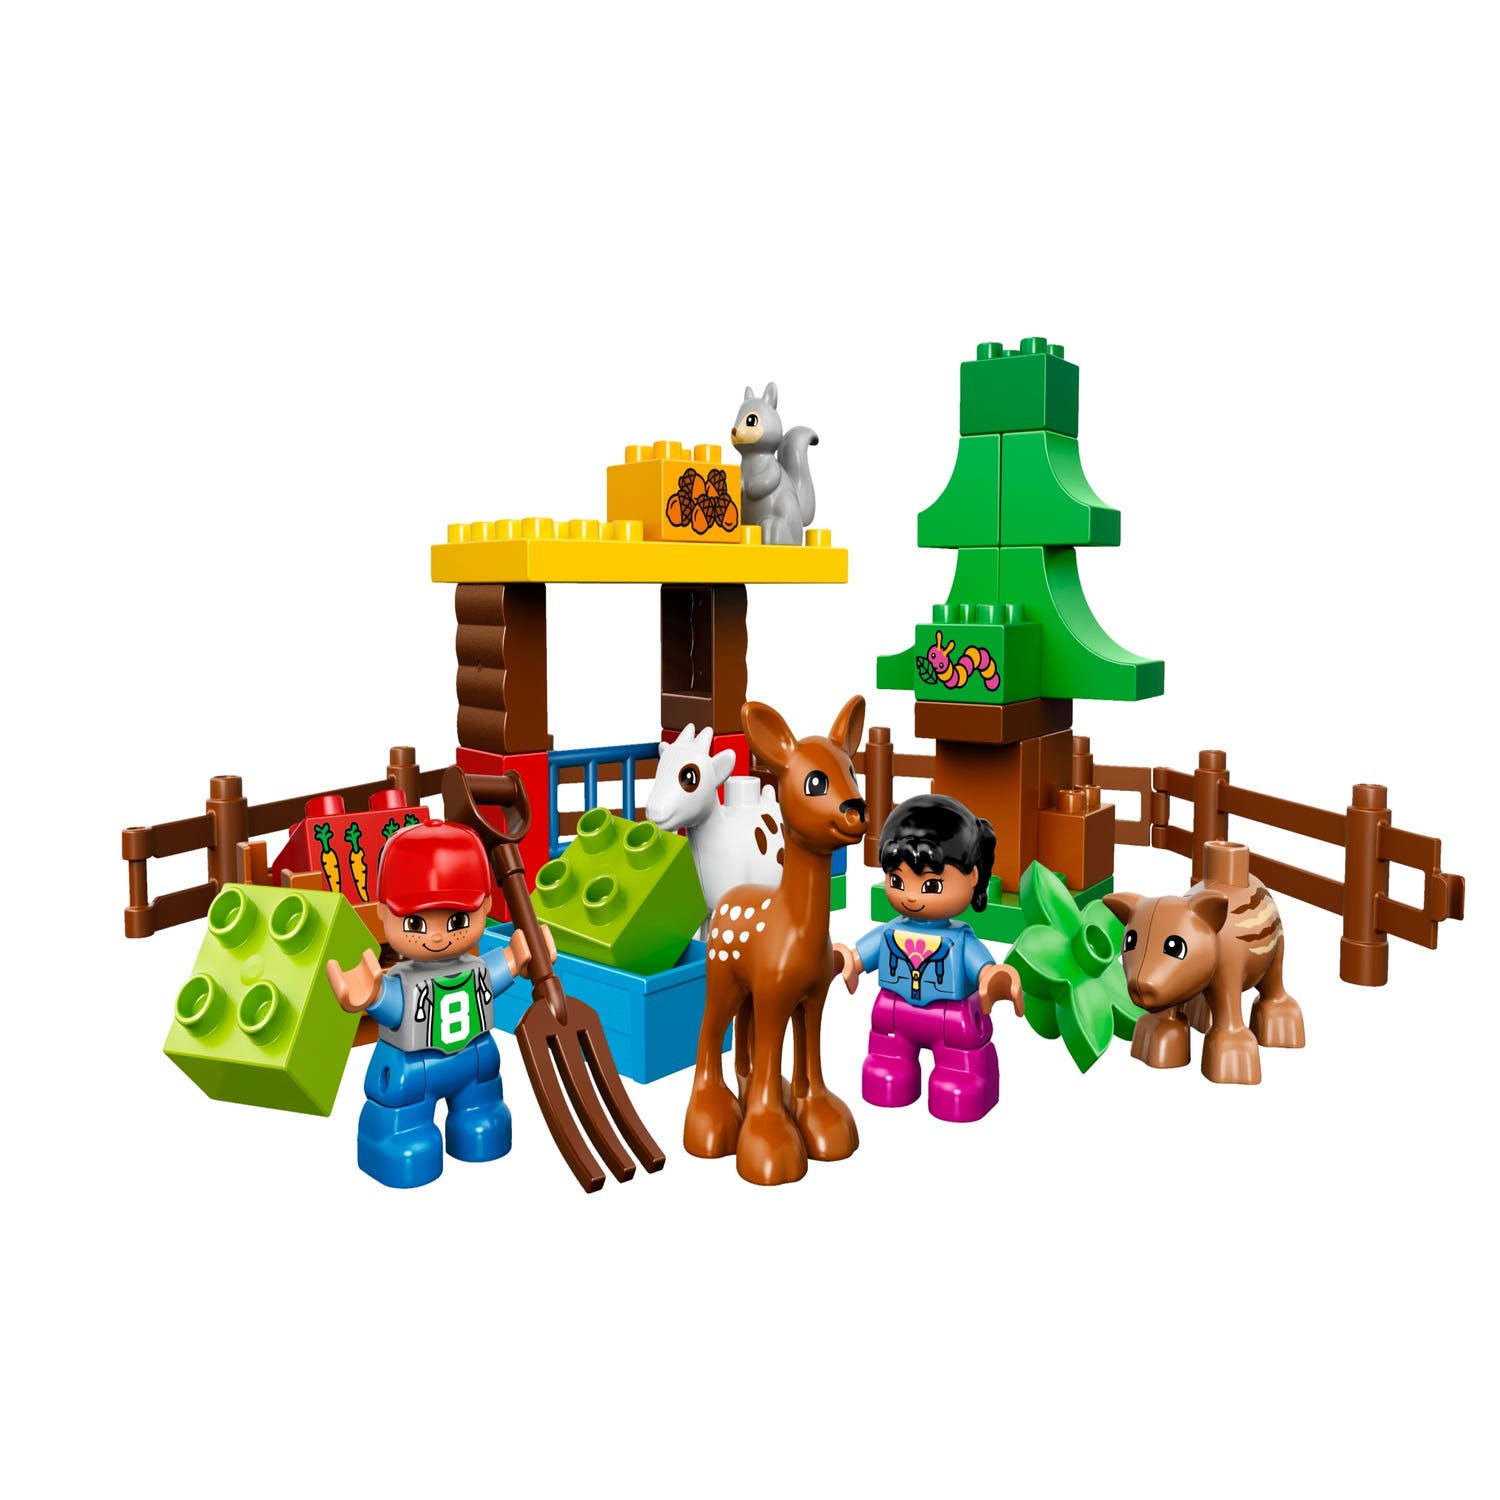 Rejse Rejse cylinder Forest: Animals 10582 | DUPLO® | Buy online at the Official LEGO® Shop US